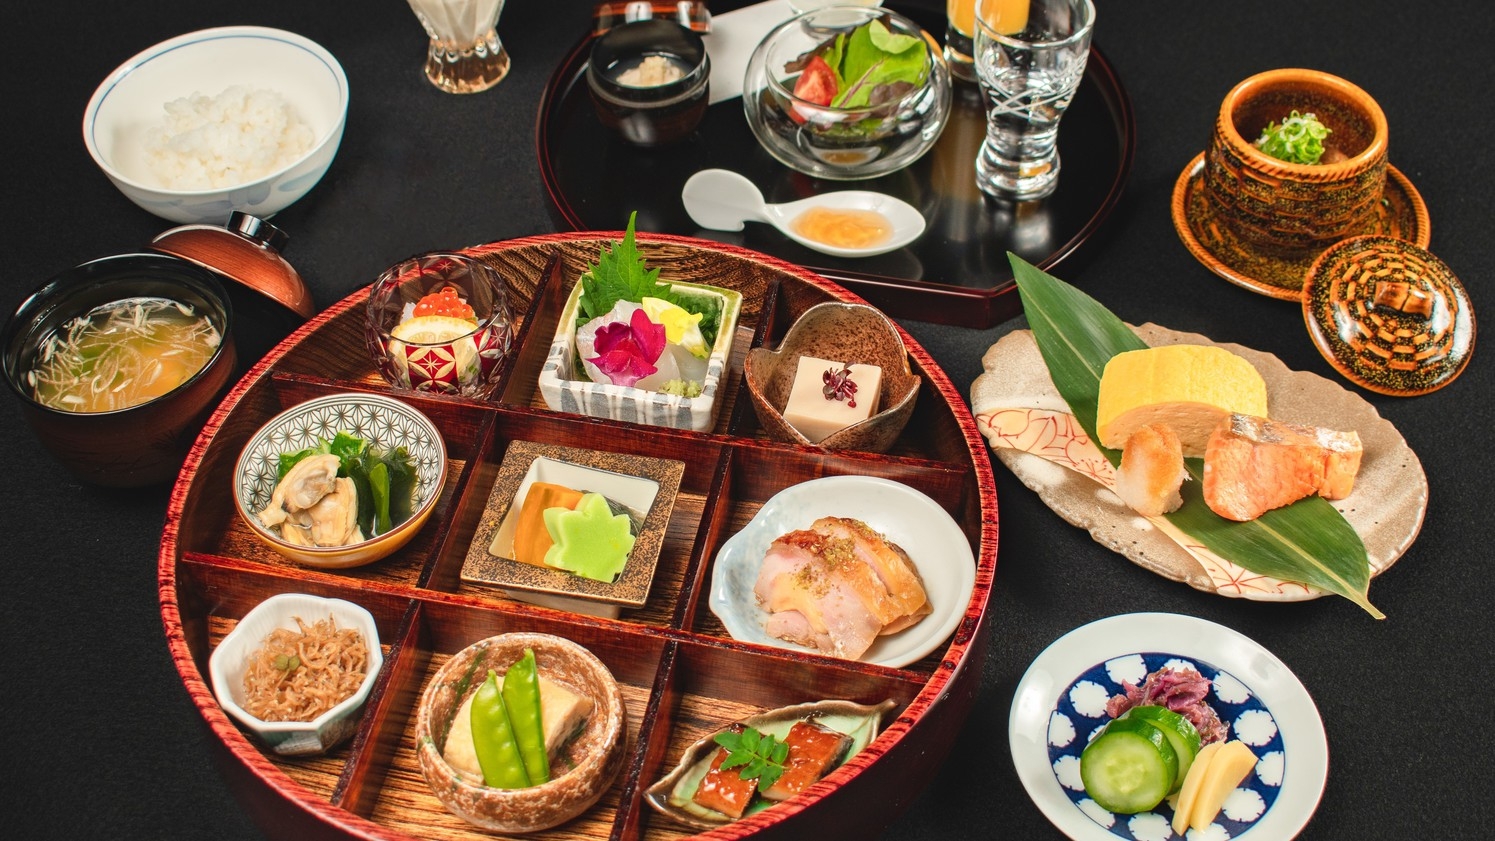 【温泉SALE】〜四季折々の京料理〜京の朝ごはんを、京懐石のレストランで贅沢に【朝食付き】